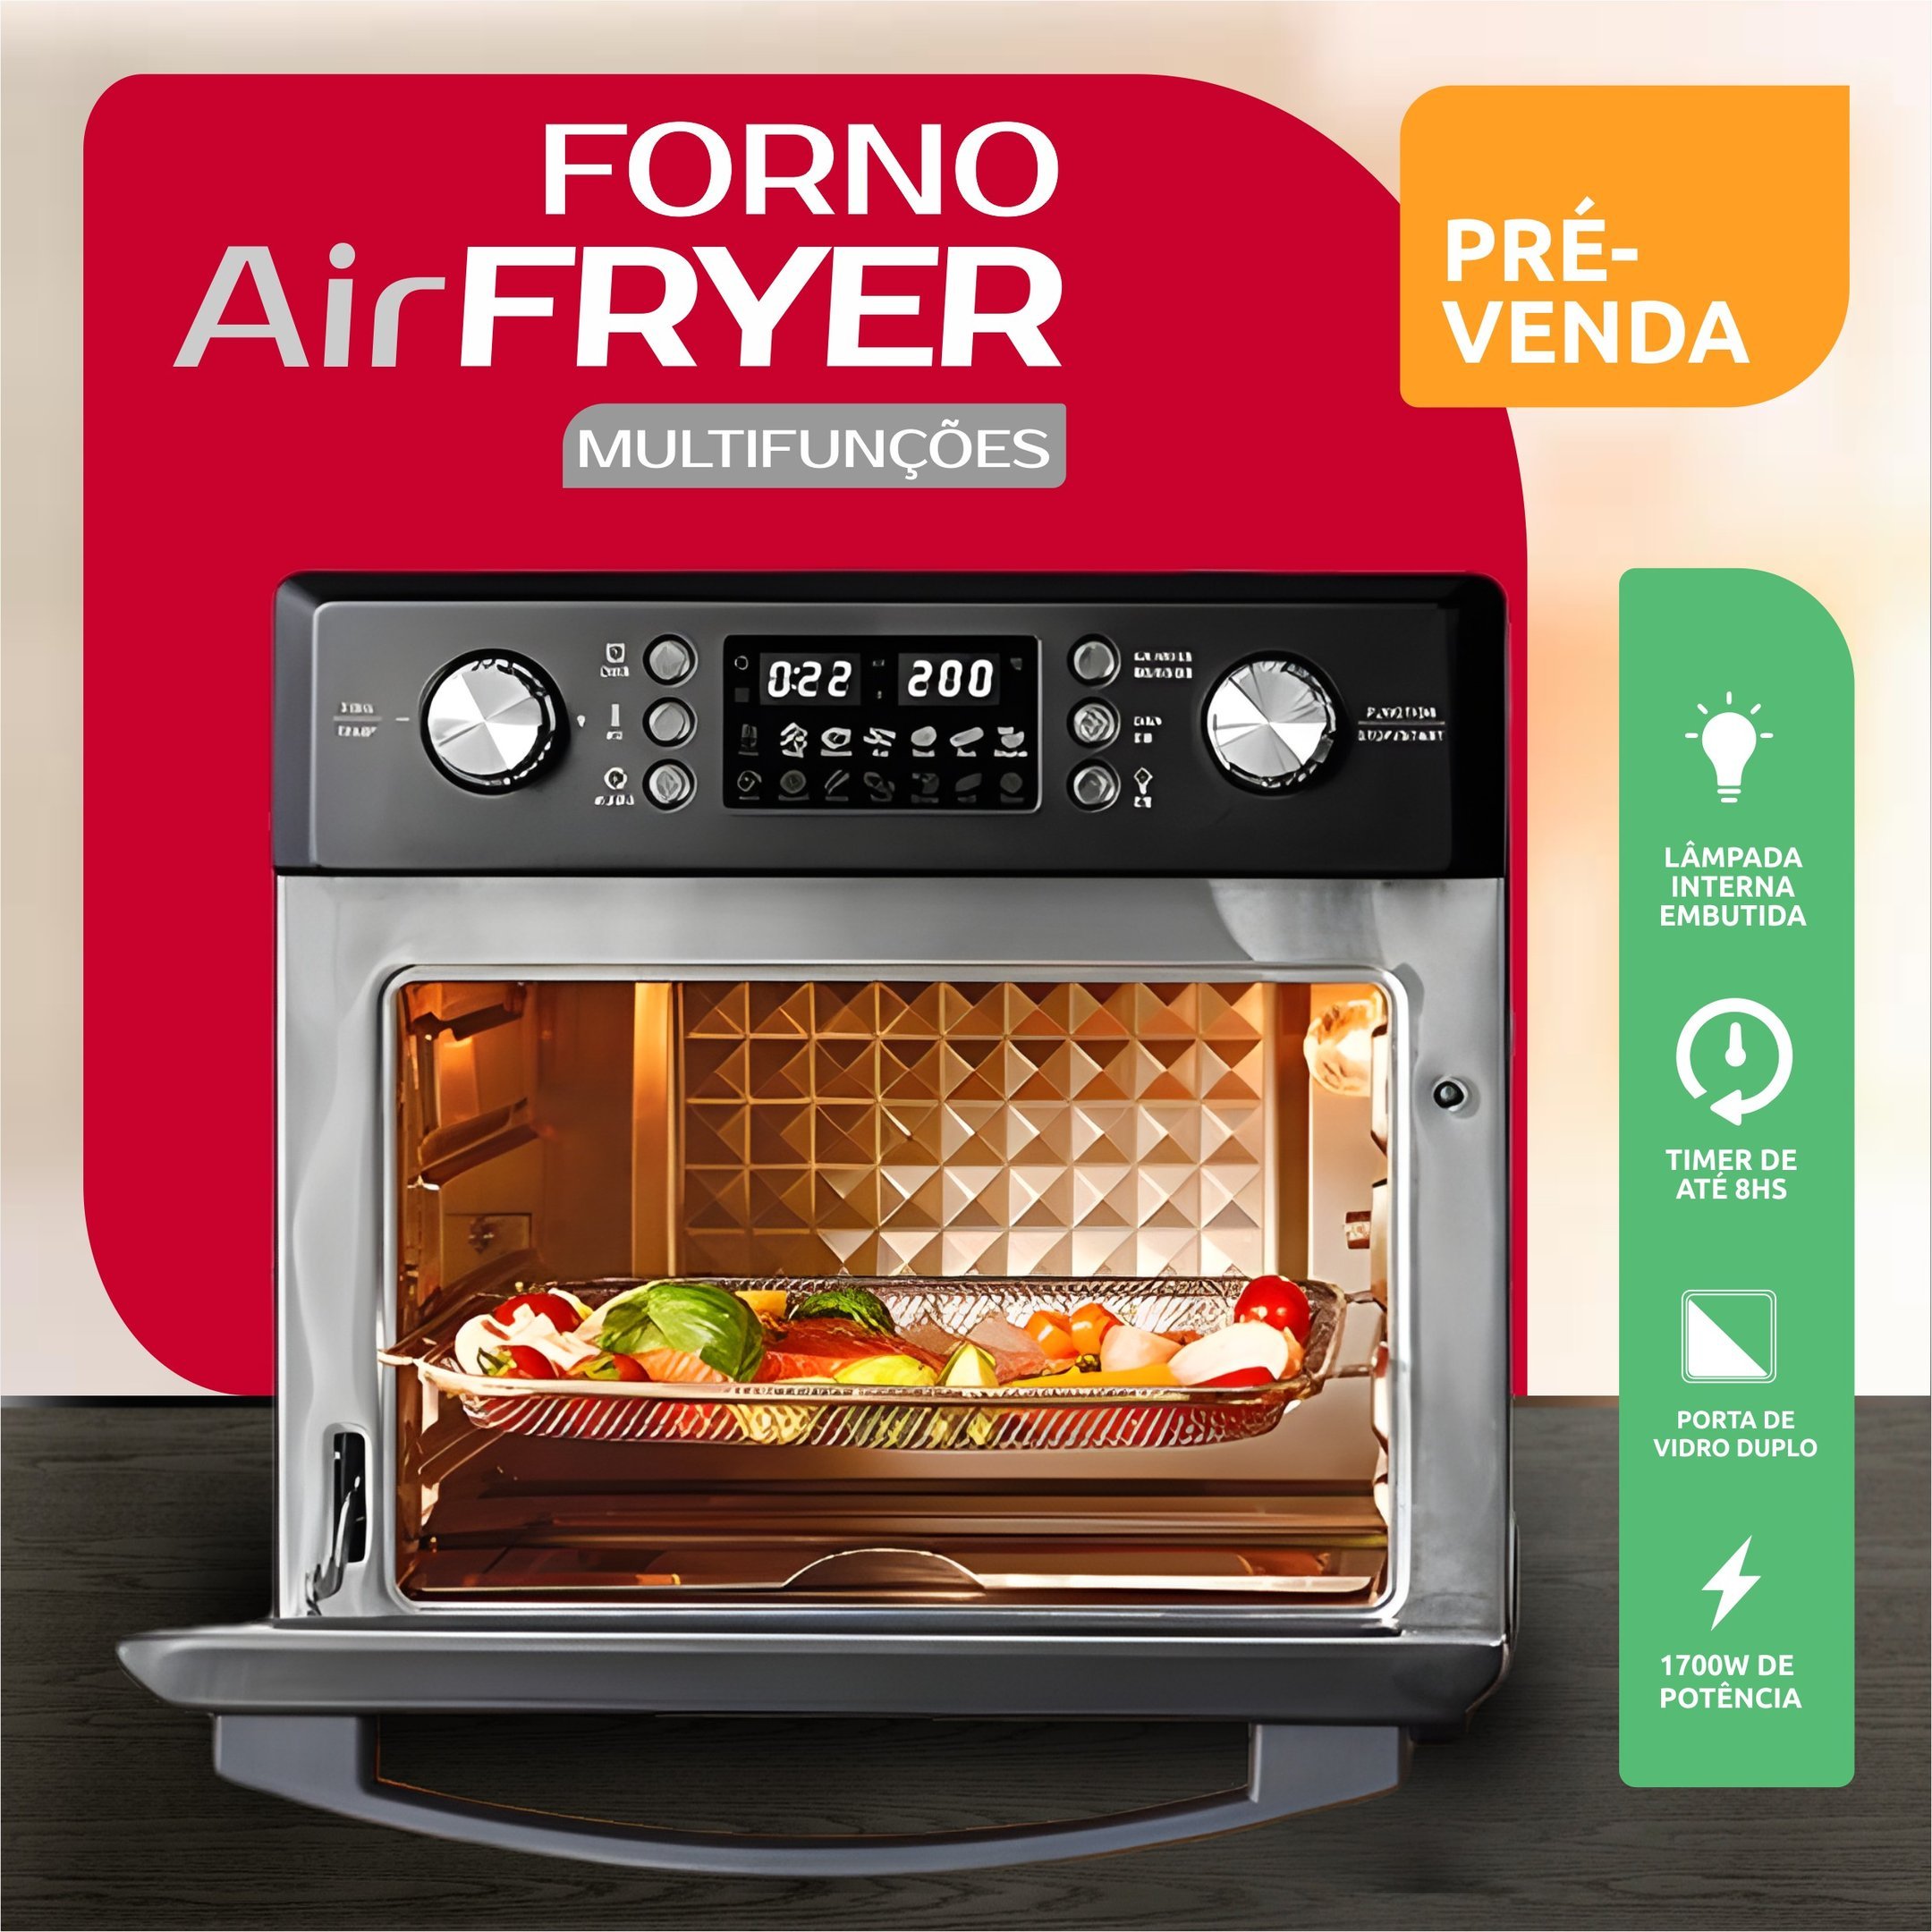 Forno Air Fryer c/ Espeto para Churrasco - 220v - 5